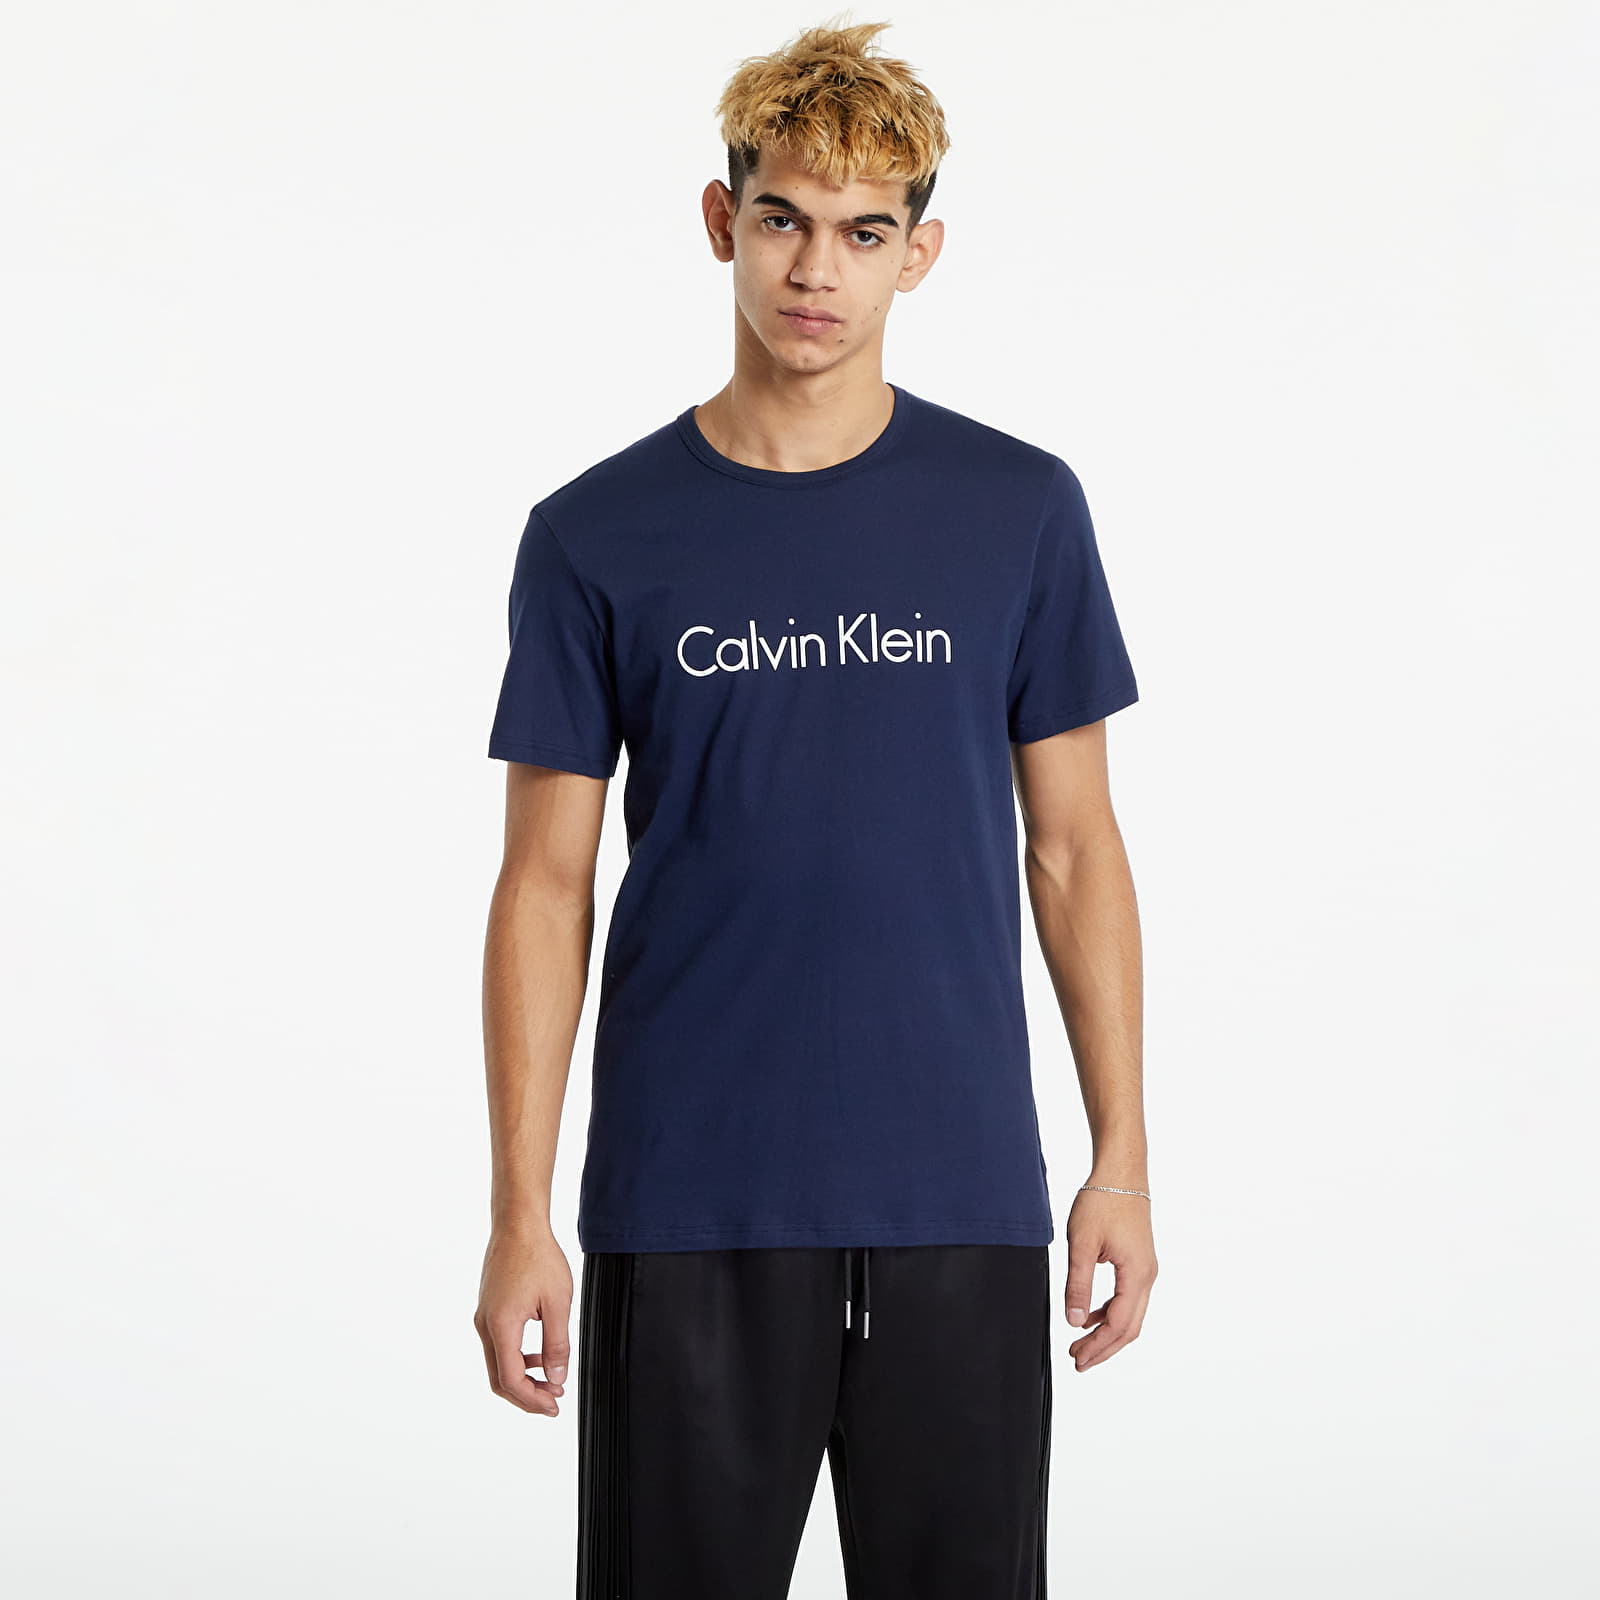 T-shirts Calvin Klein Graphic Tee Navy